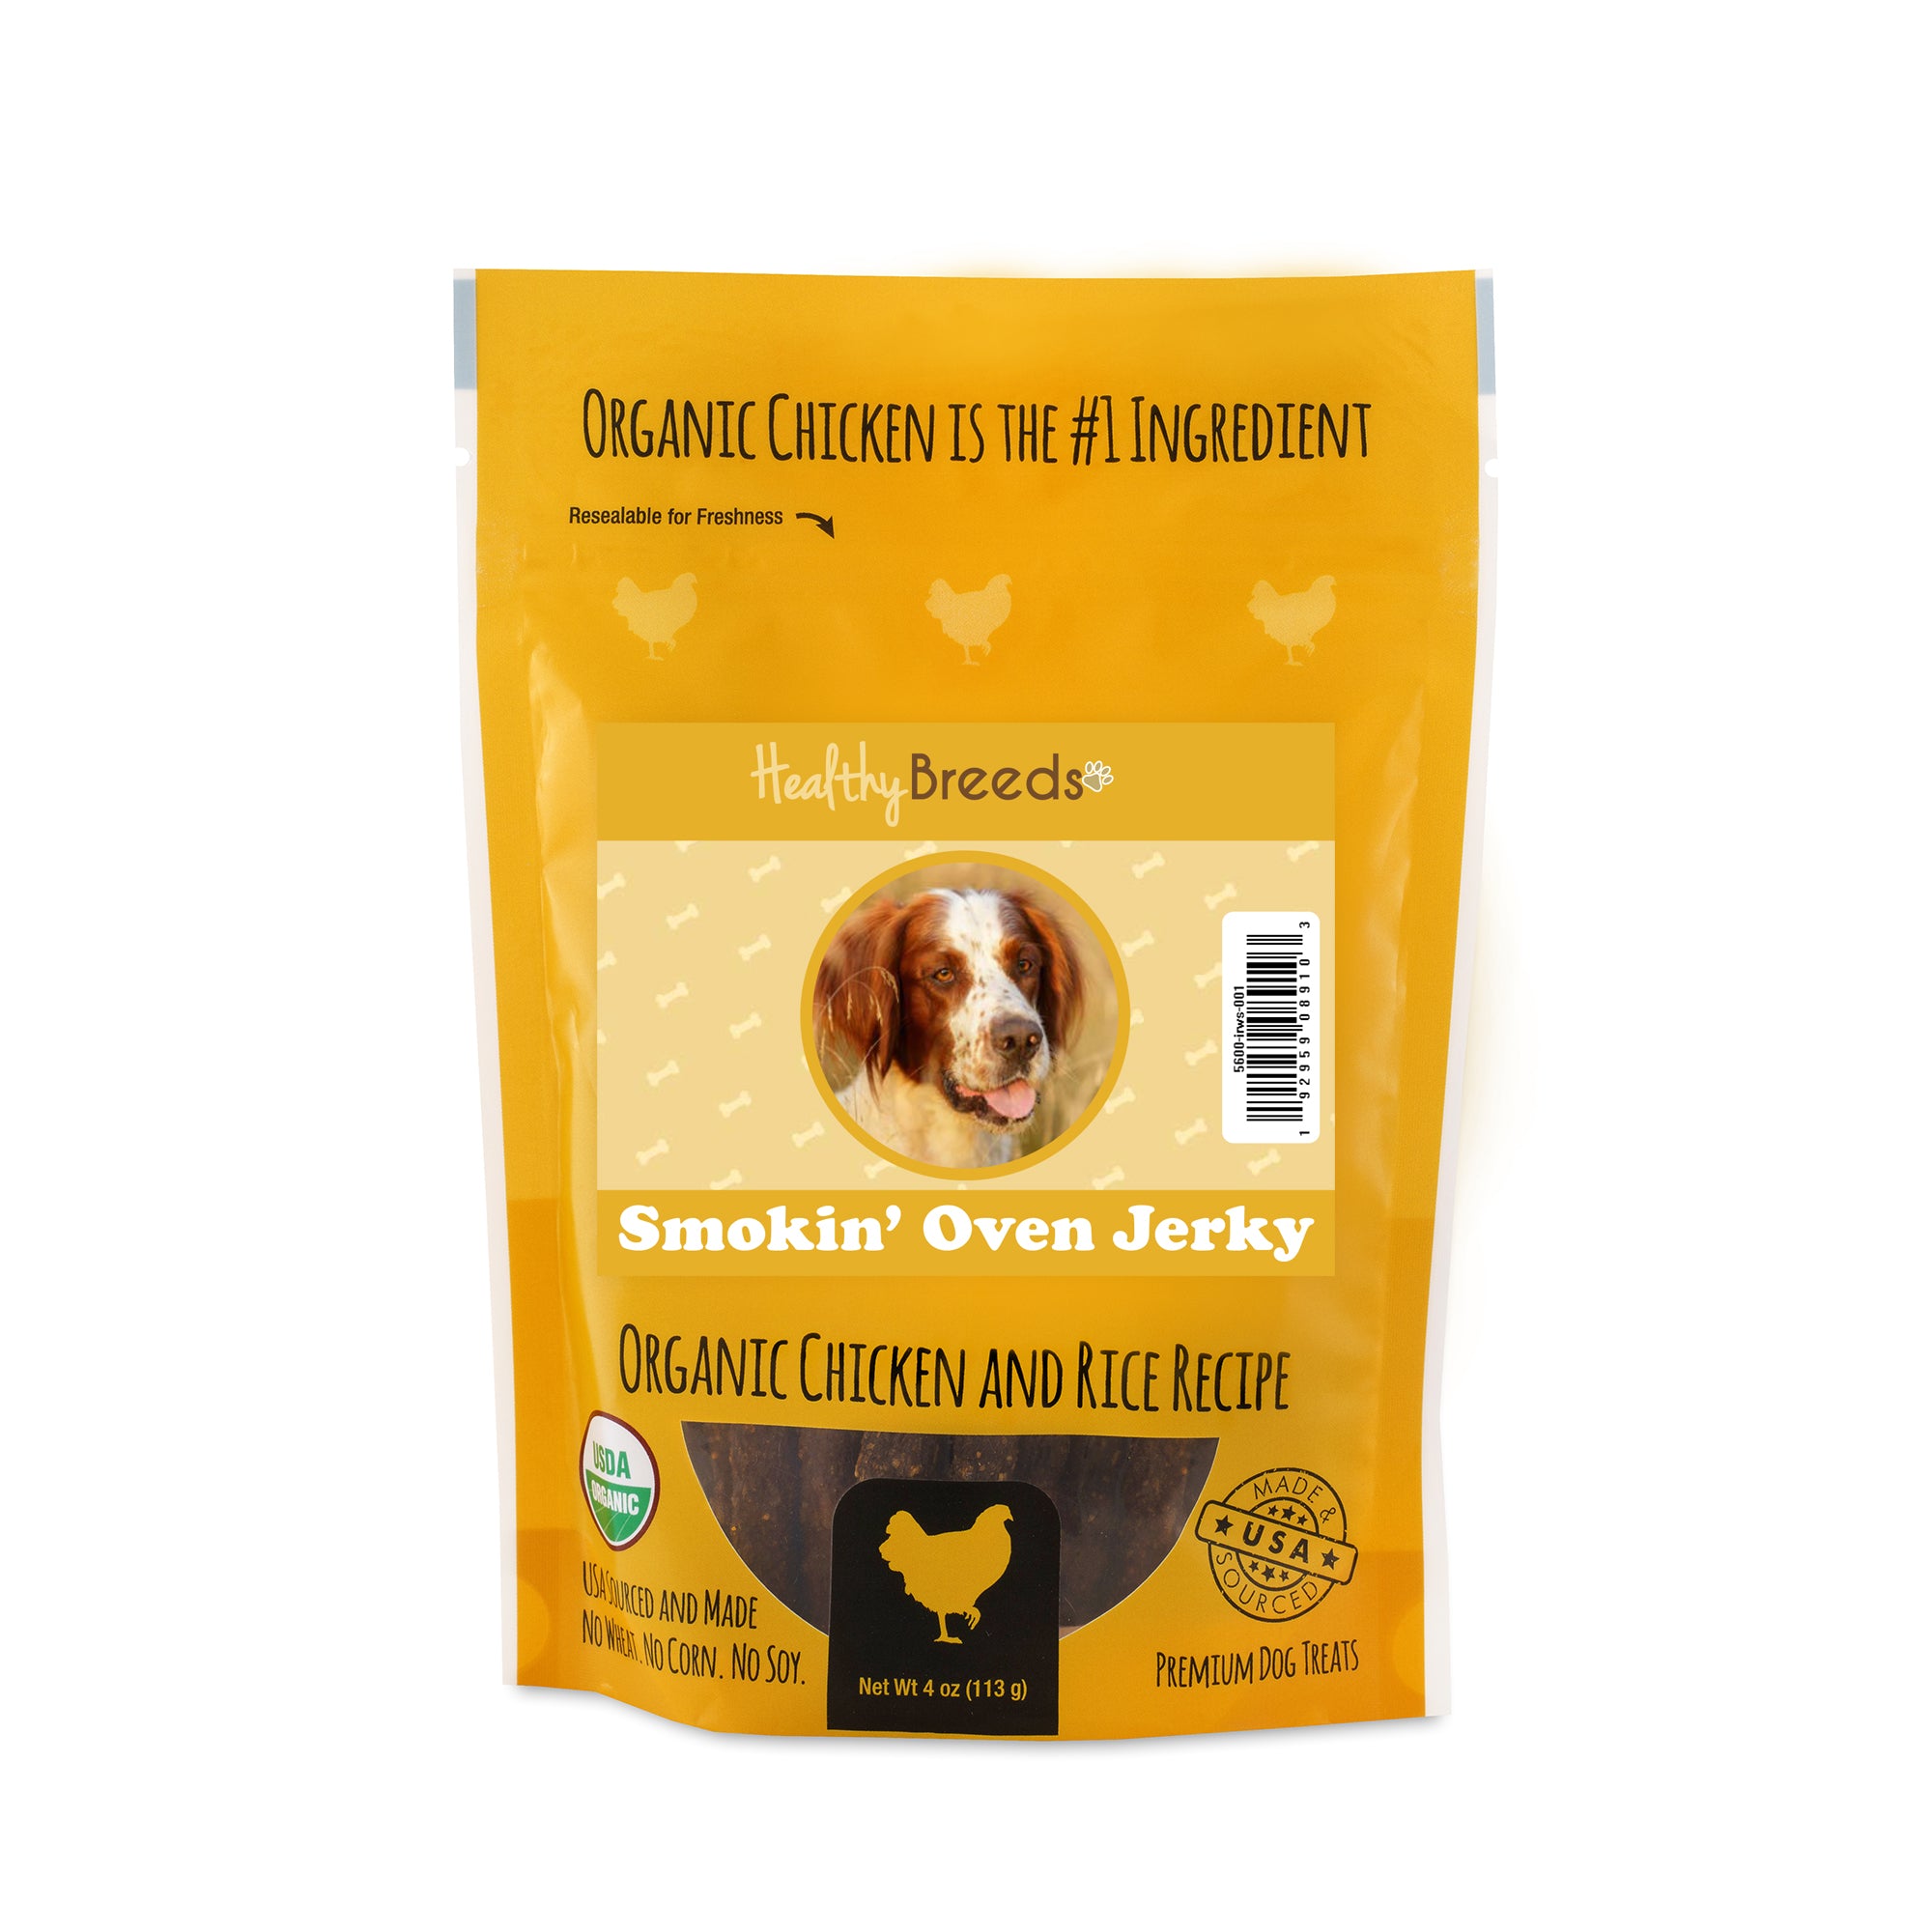 Irish Red and White Setter Smokin' Oven Organic Chicken & Rice Recipe Jerky Dog Treats